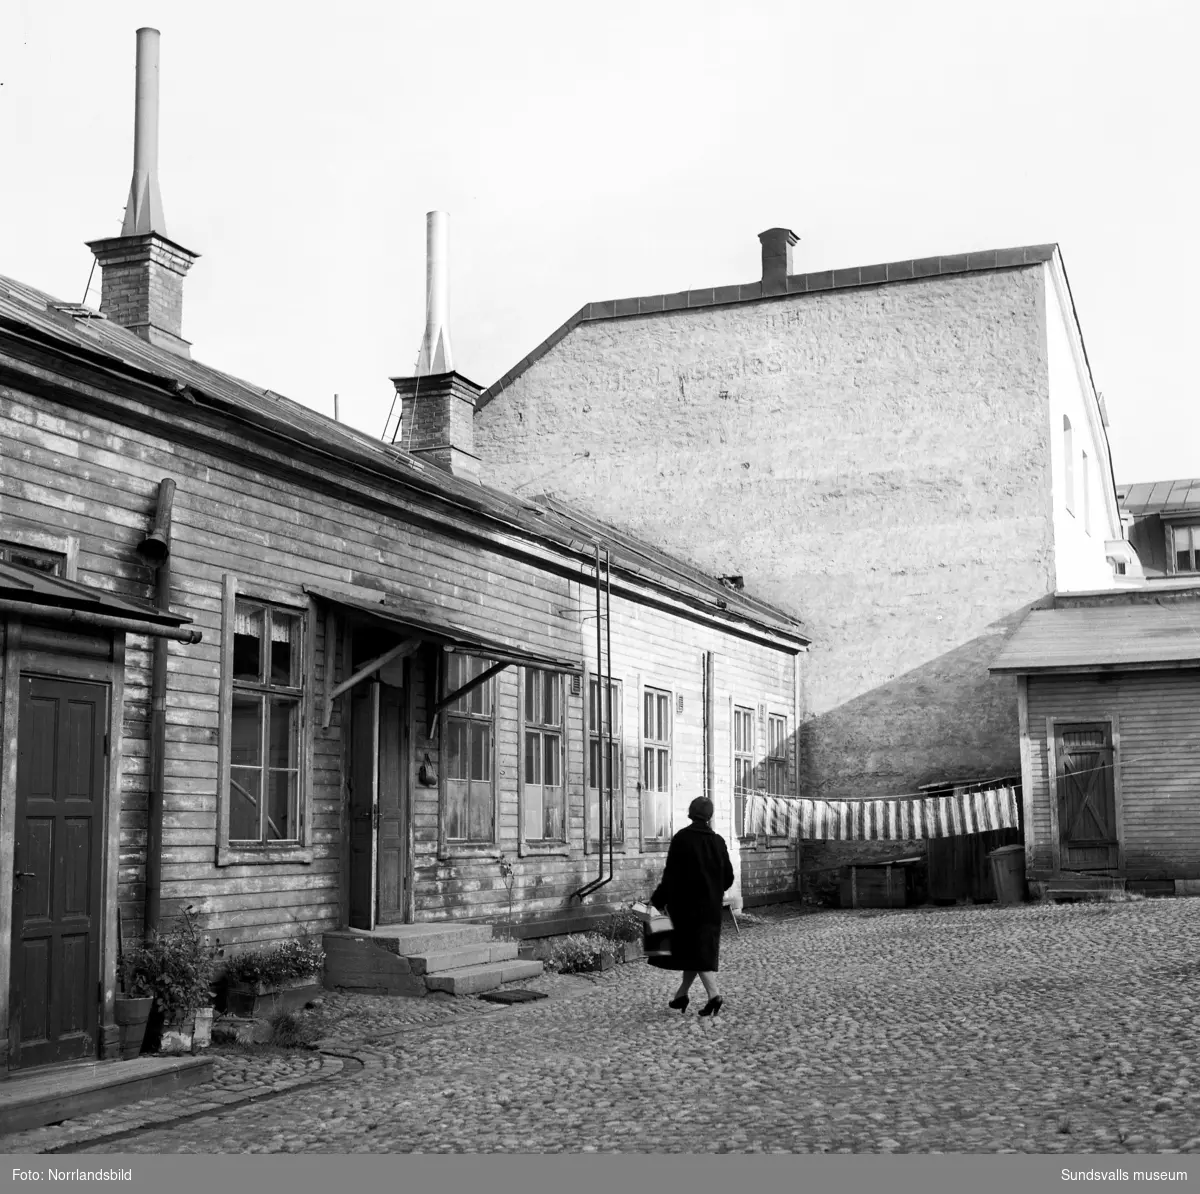 Sundsvalls Arbetsstuga vid Storgatan 39 där barn från fattiga förhållanden under många år fått utspisning och undervisning i olika hantverk på skolfri tid. Bildserie från innergården. Kvarteret Målaren där numera (2020) polisstationen är belägen.